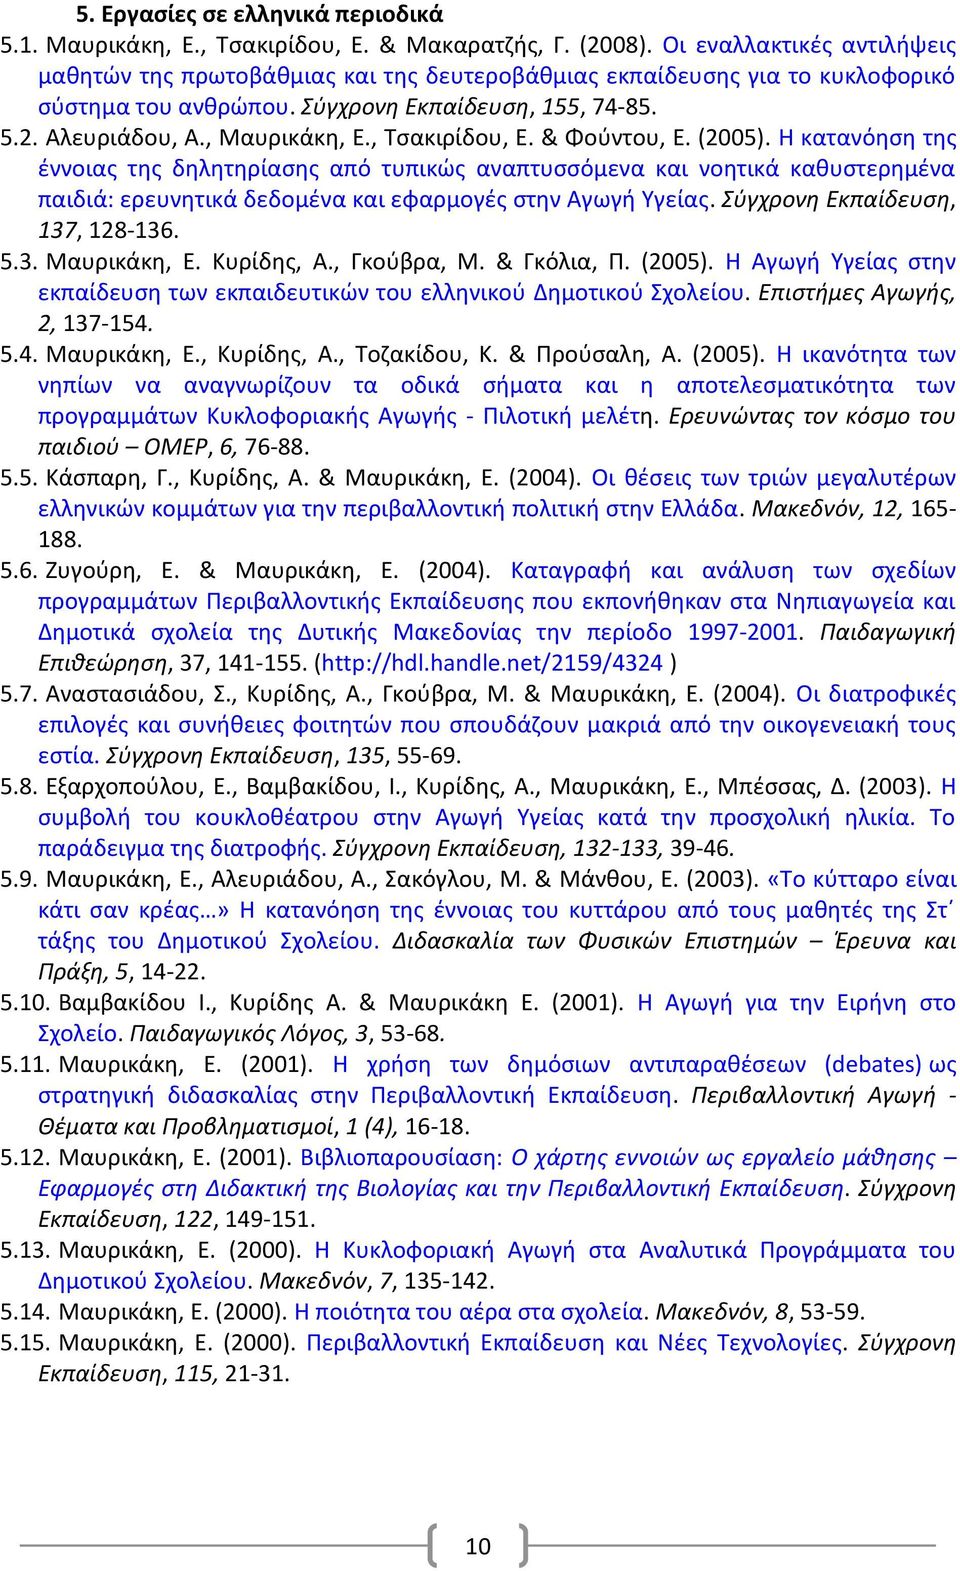 , Σςακιρίδου, Ε. & Φοφντου, Ε. (2005). Θ κατανόθςθ τθσ ζννοιασ τθσ δθλθτθρίαςθσ από τυπικϊσ αναπτυςςόμενα και νοθτικά κακυςτερθμζνα παιδιά: ερευνθτικά δεδομζνα και εφαρμογζσ ςτθν Αγωγι Τγείασ.